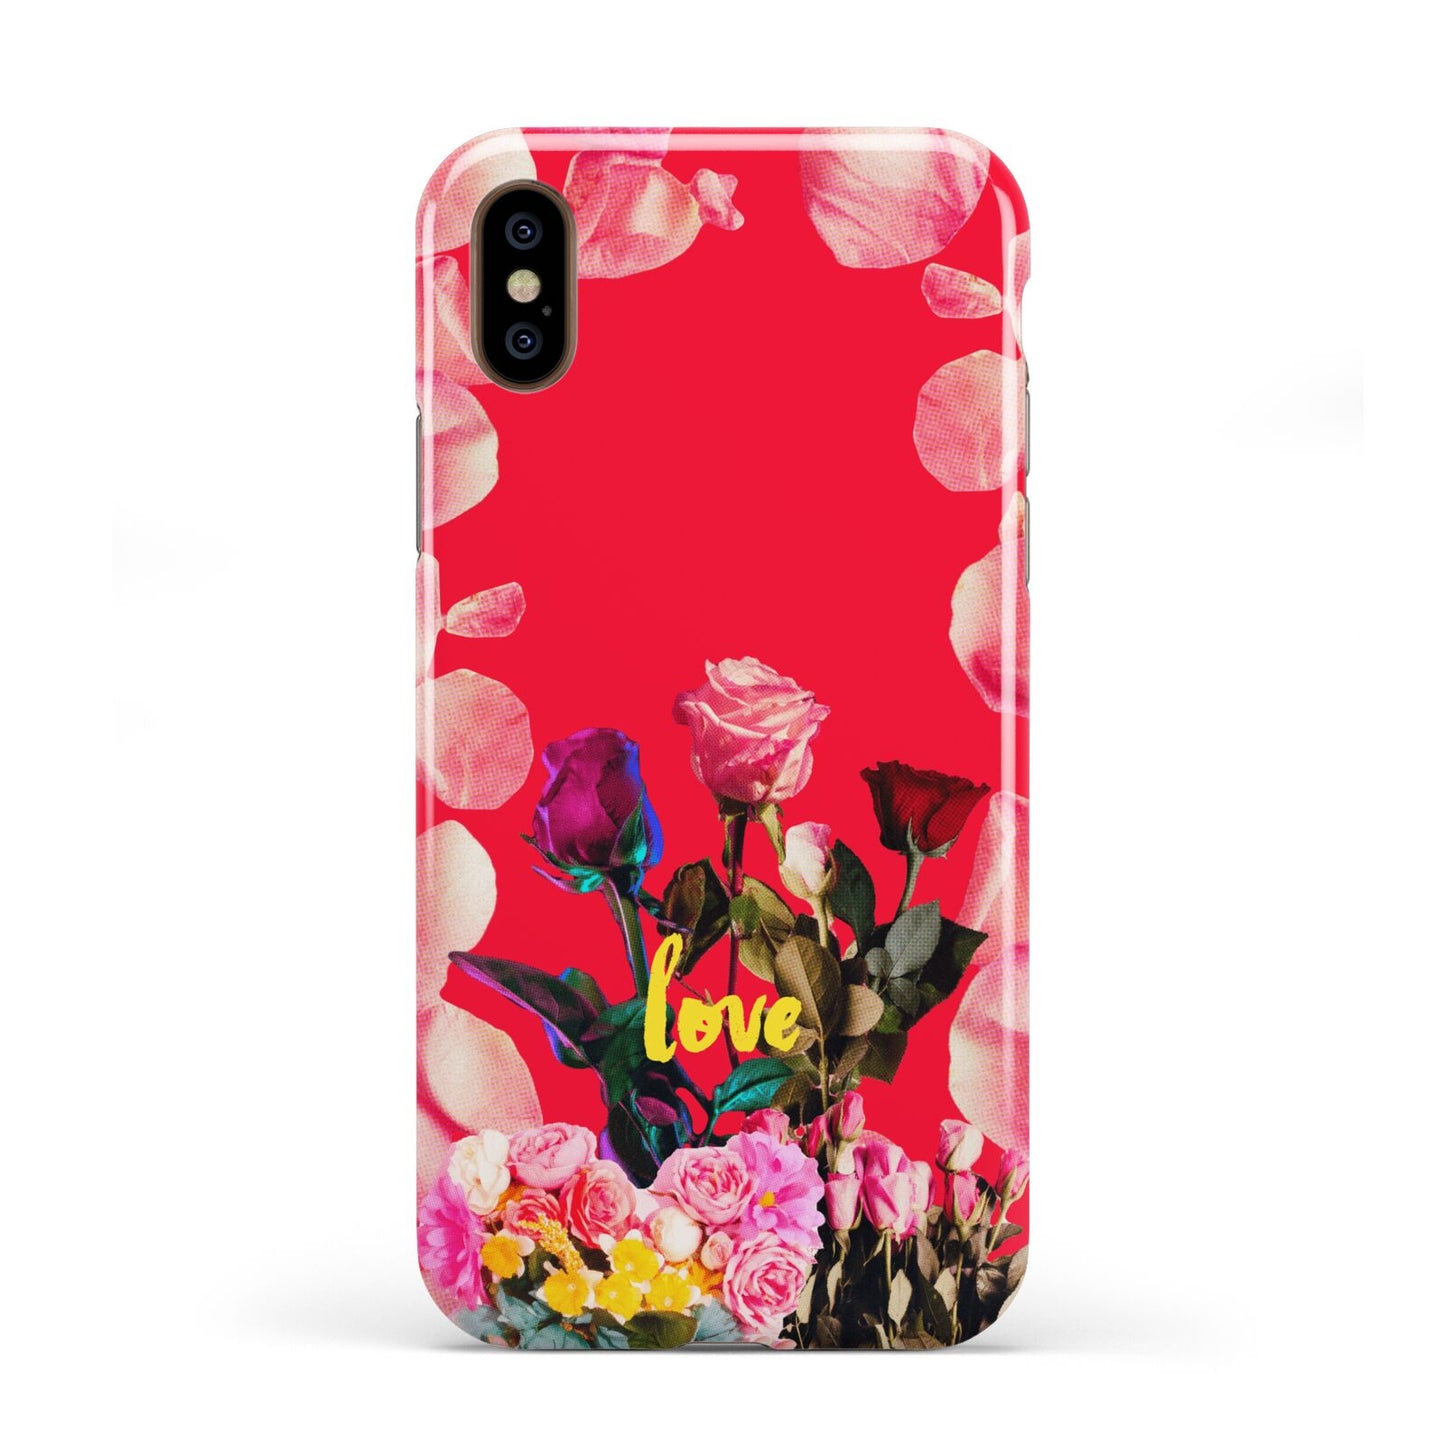 Retro Floral Valentine Apple iPhone XS 3D Tough